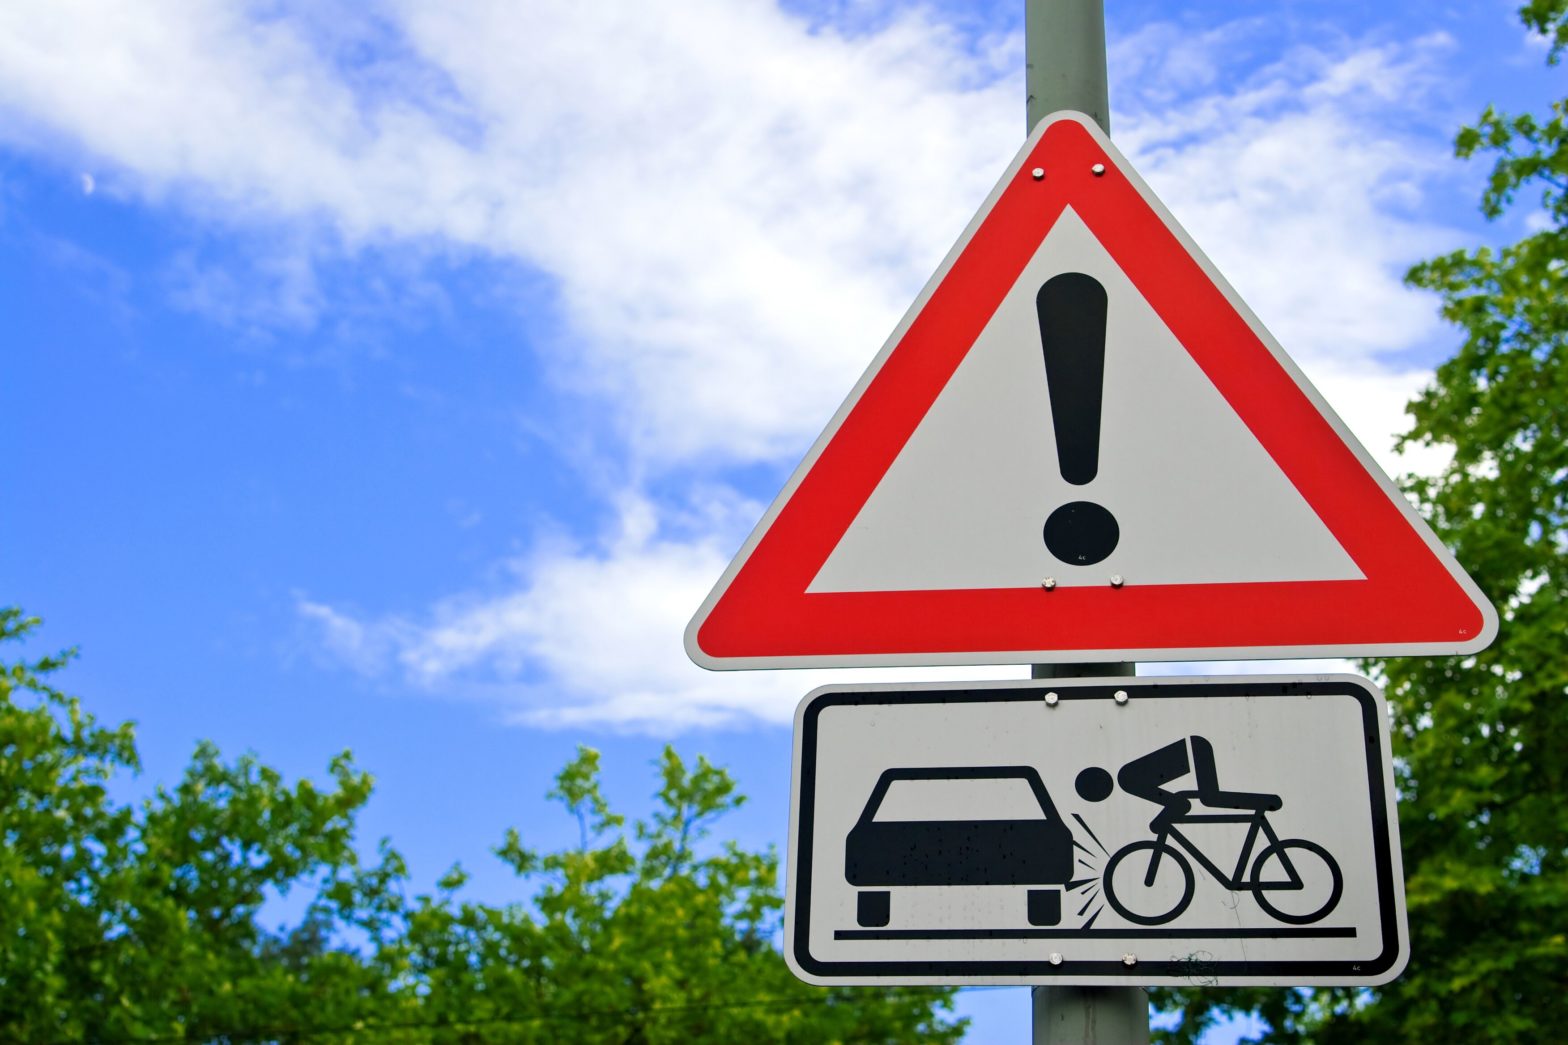 Blockieren an Kreuzungen und gefährliche Radfahrer sind die häufigsten Ursachen für Aufregungen bei Autofahrern